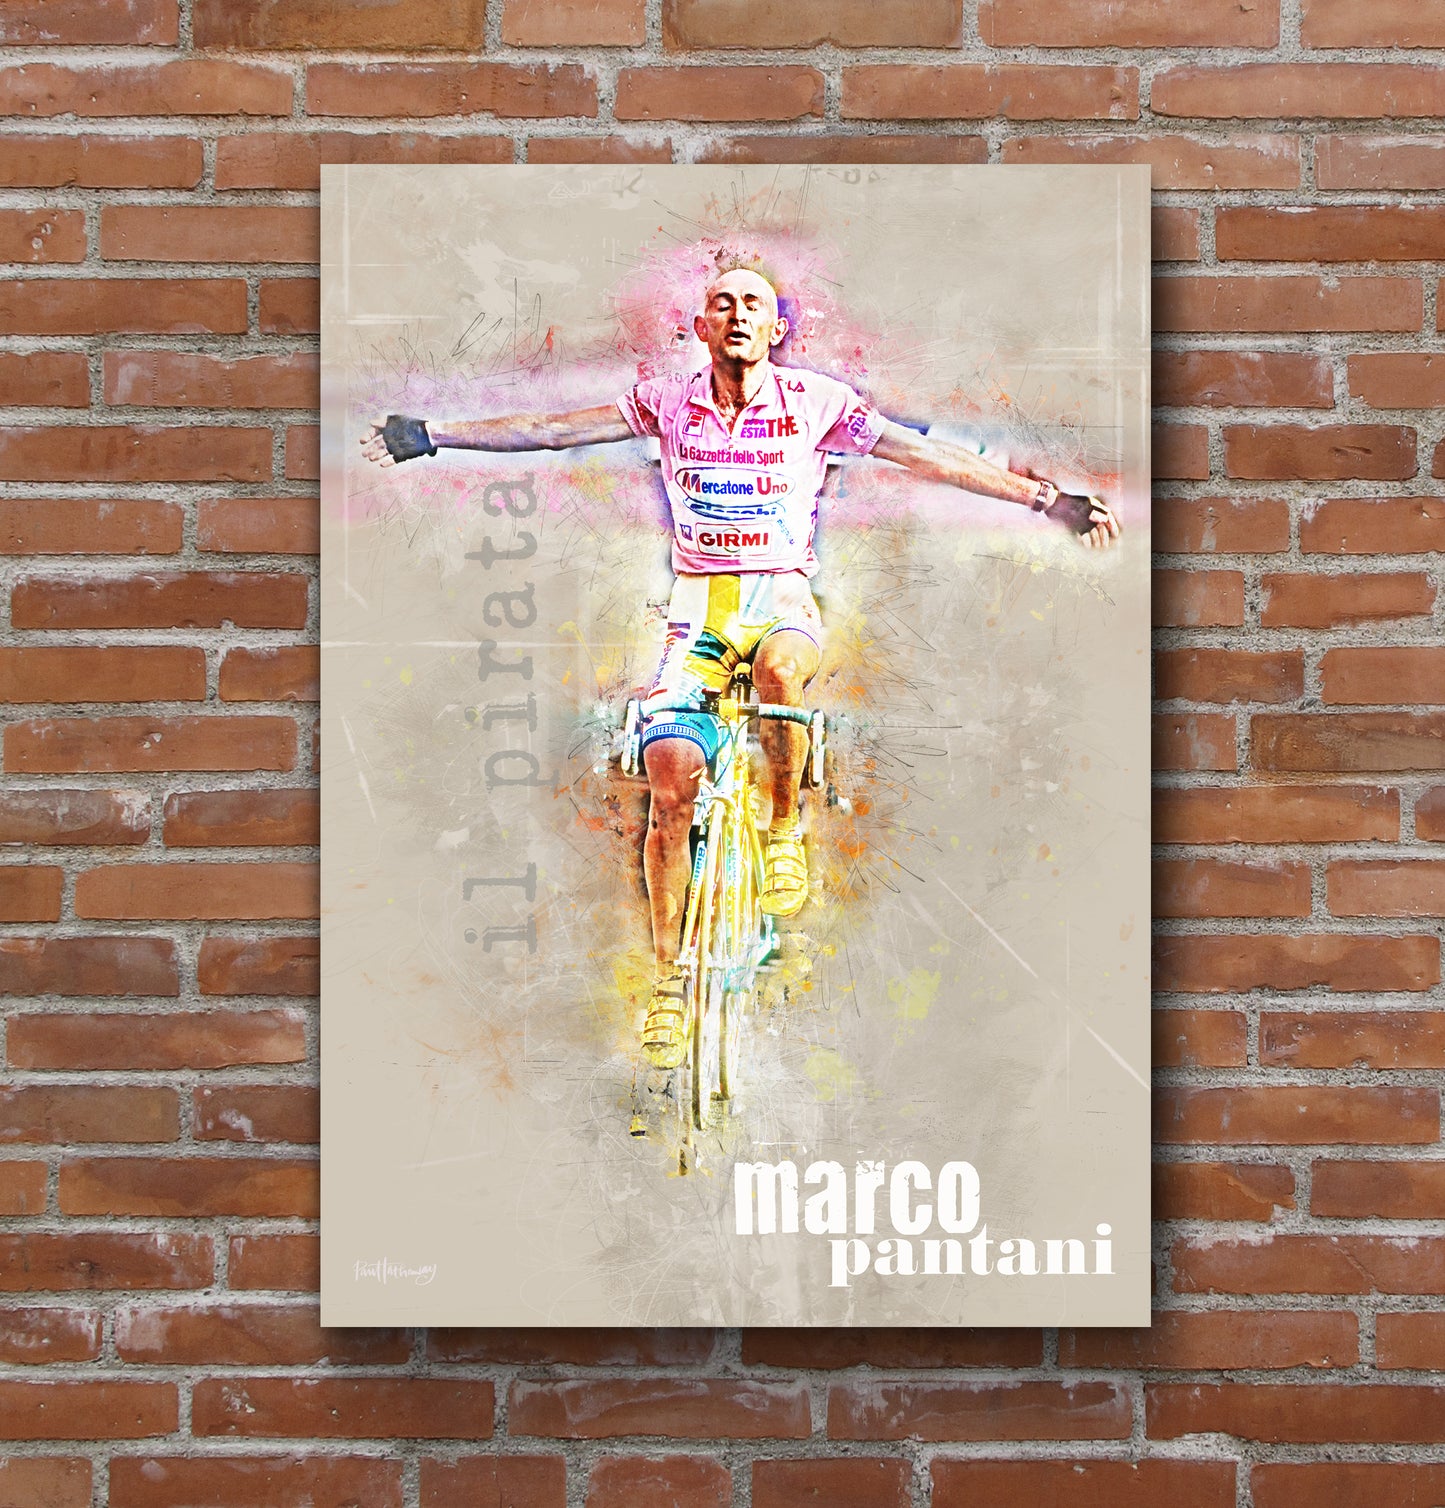 marco pantani, cycling poster